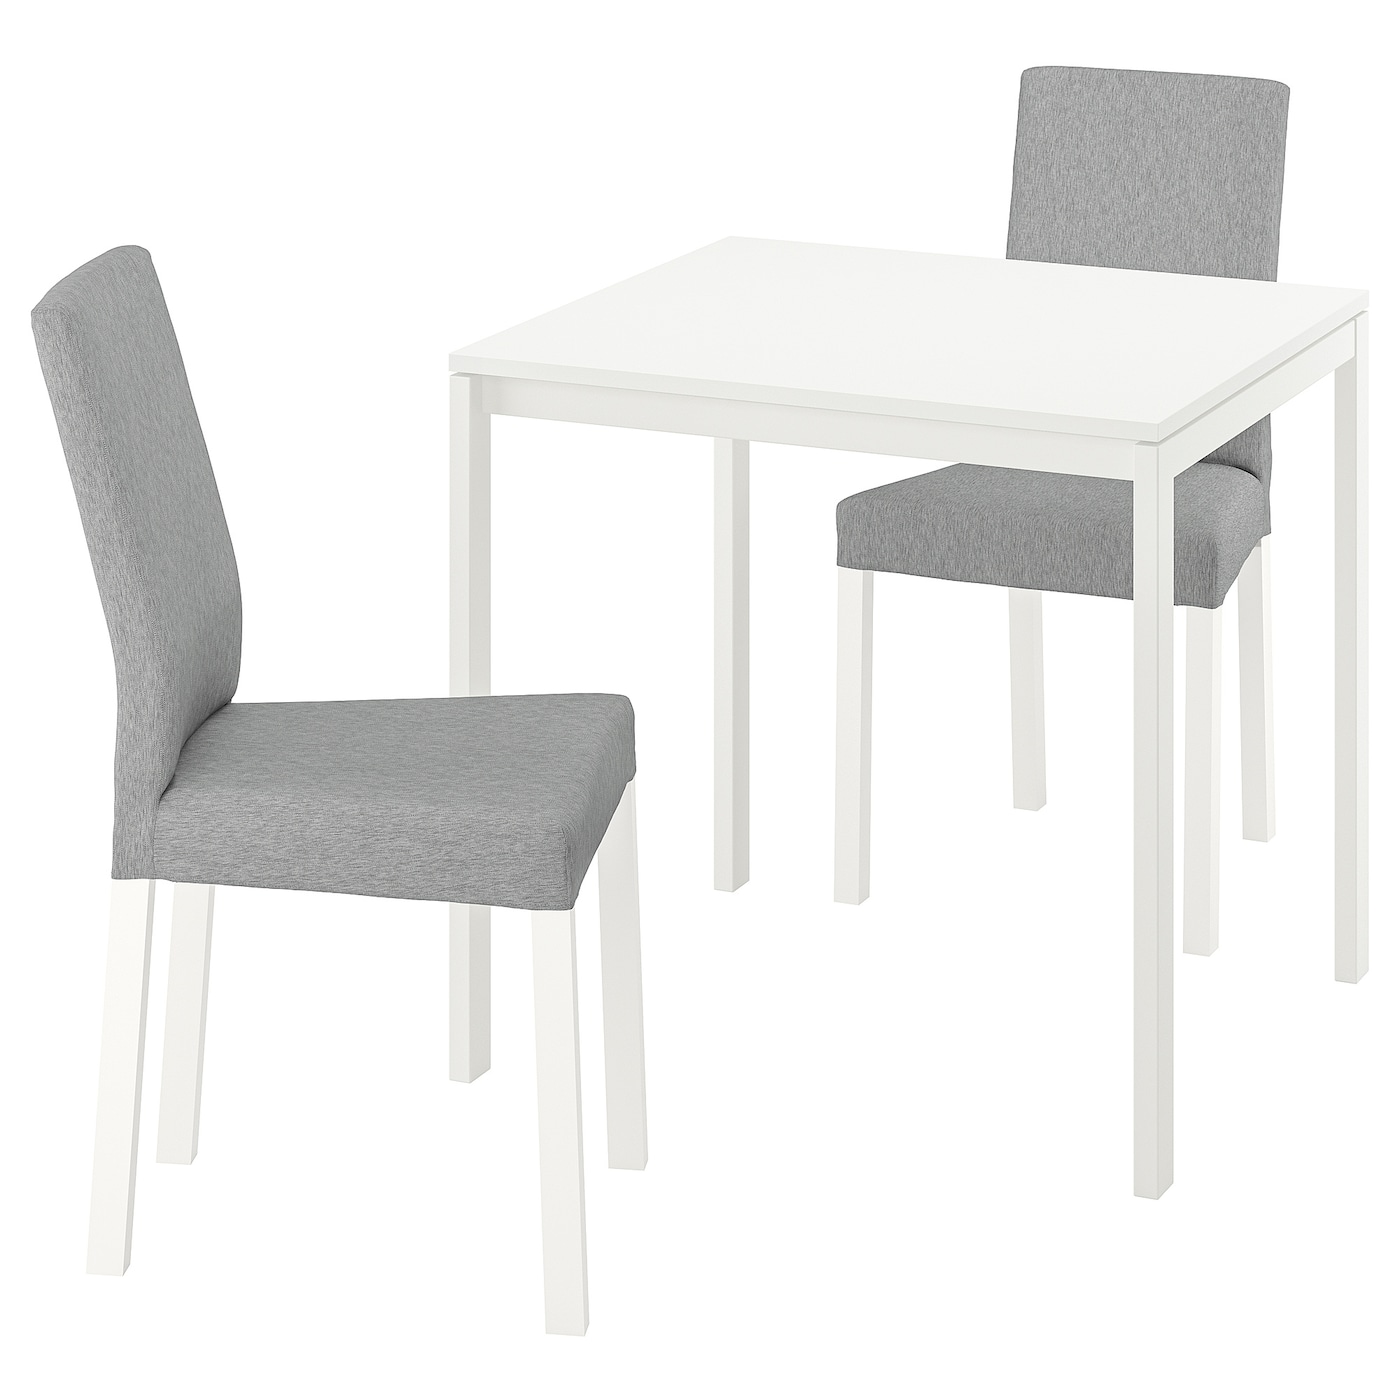 Оптимальная высота стула и стола